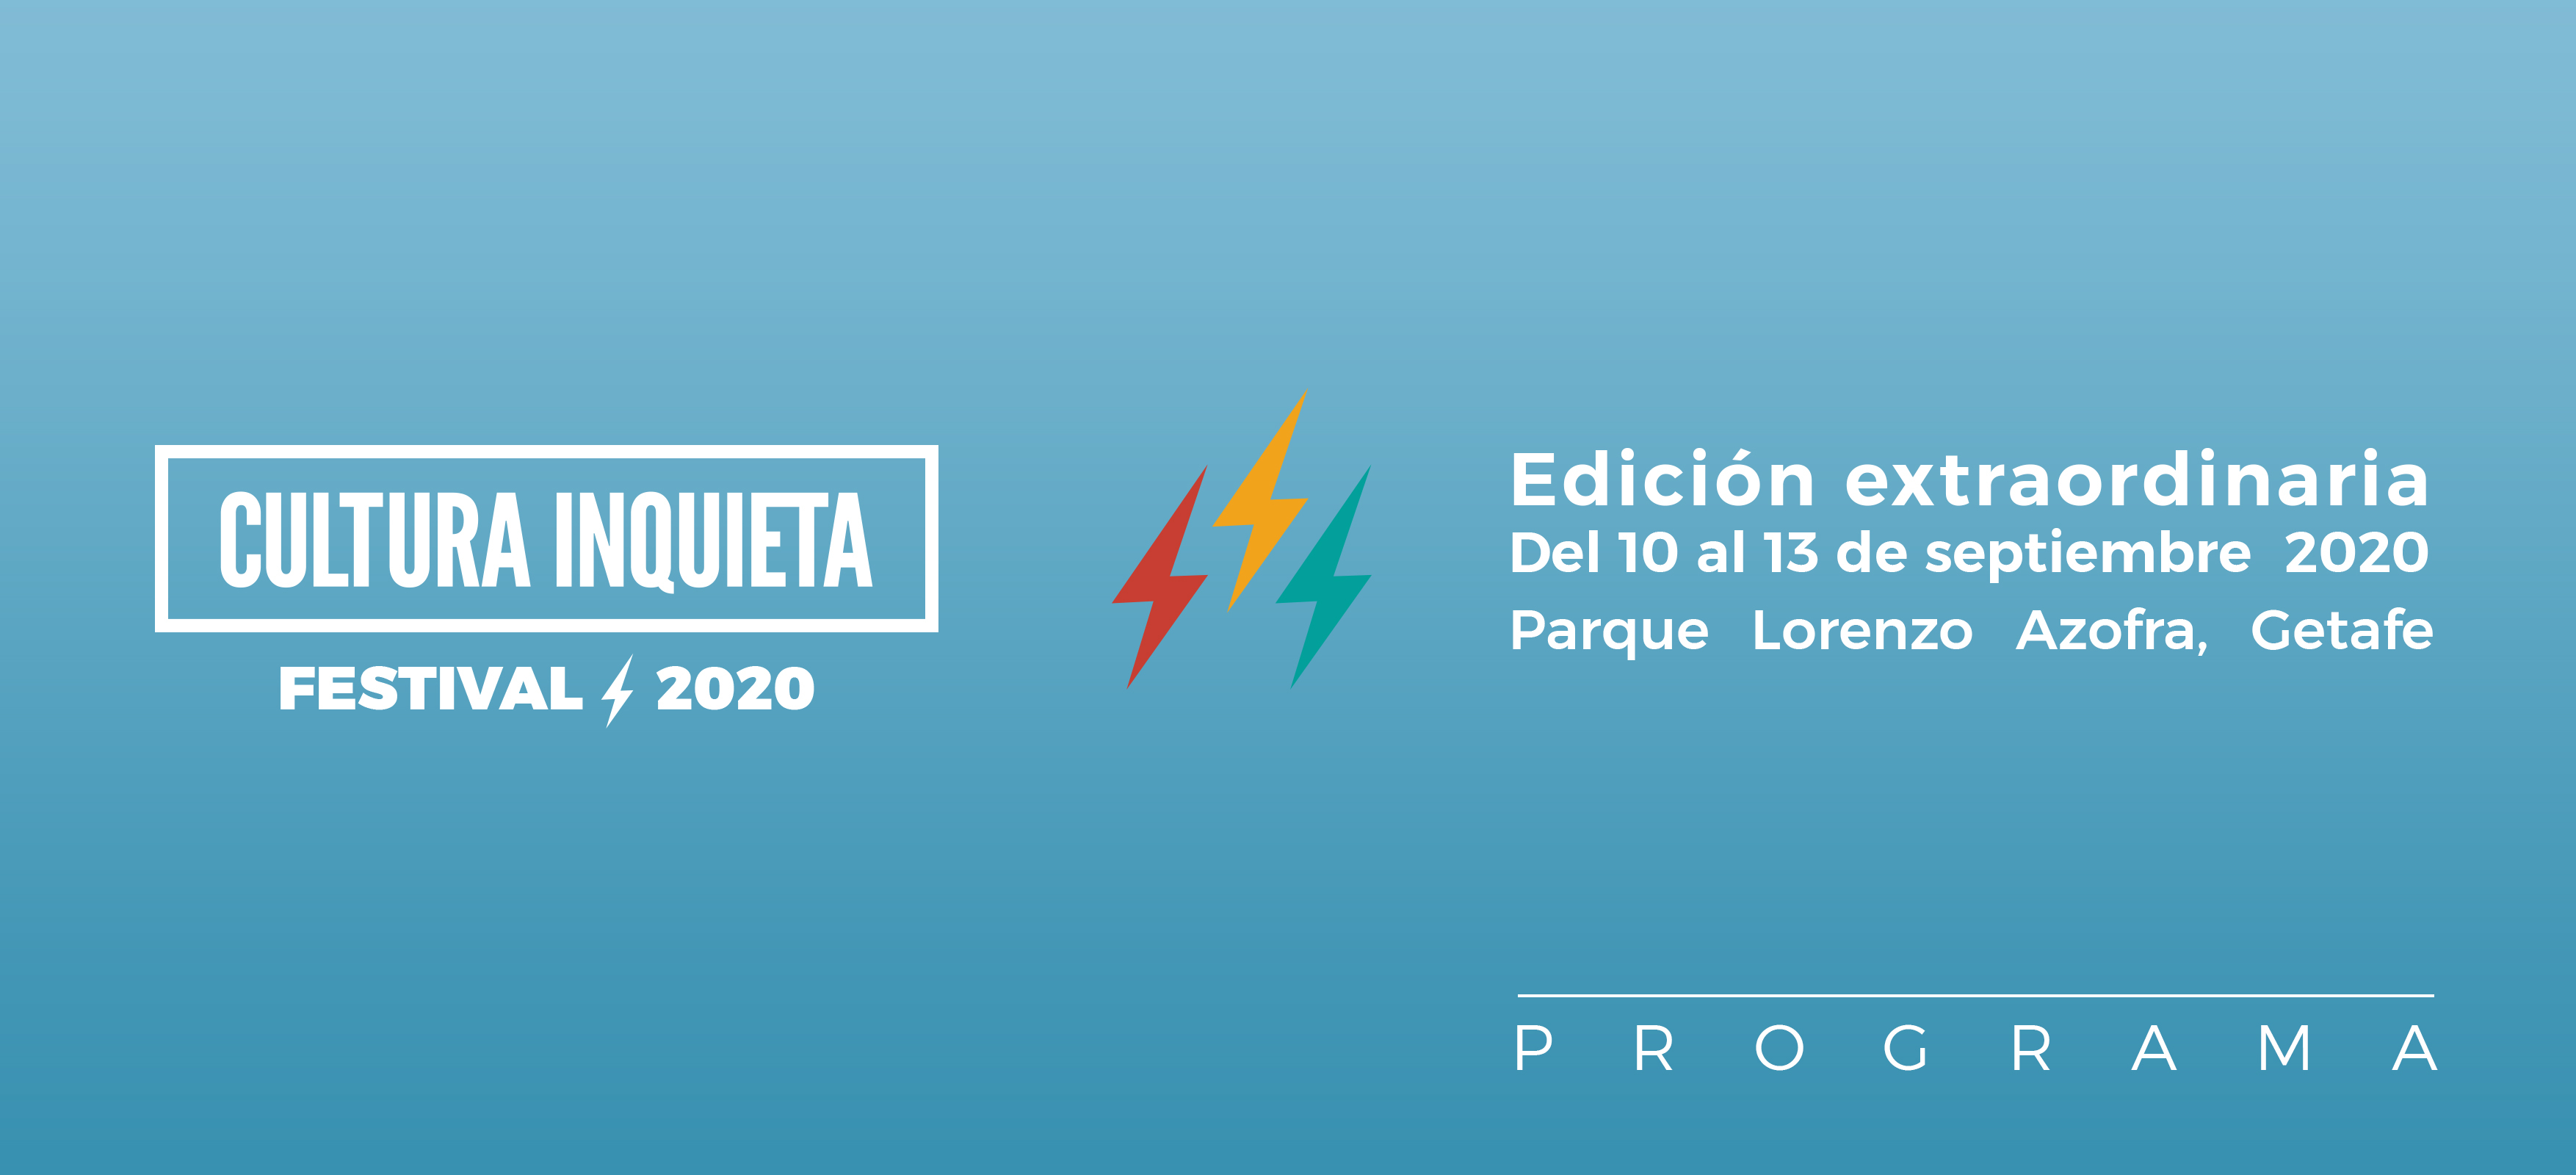 Programa de la Edición Extraordinaria del Festival Cultura Inquieta 2020